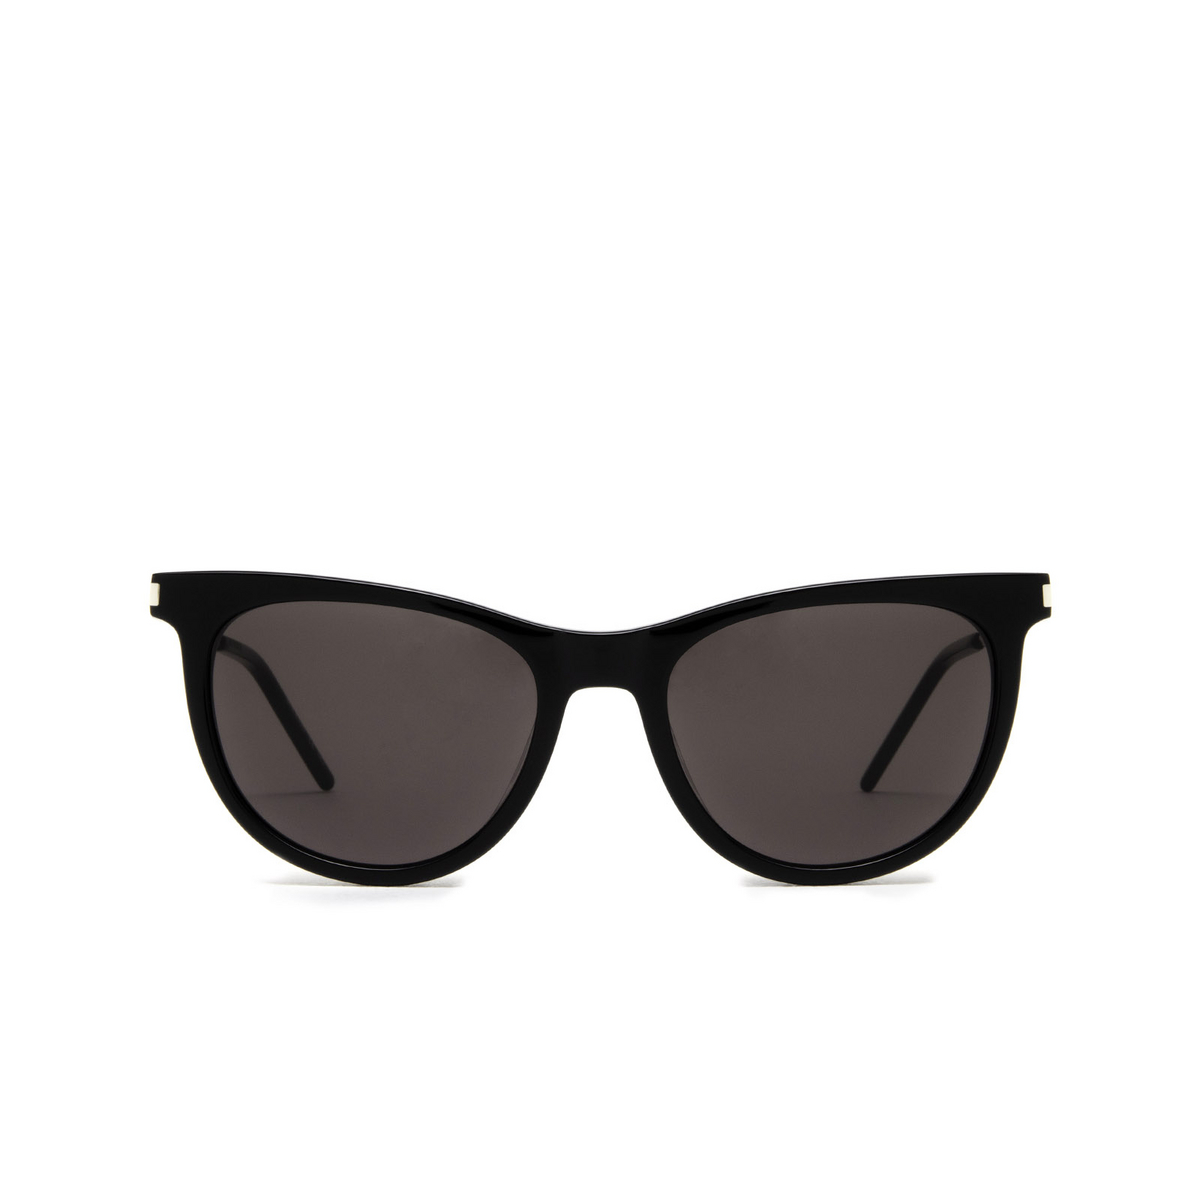 Saint Laurent® Cat-eye Sunglasses: SL 510 color Black 001 - front view.